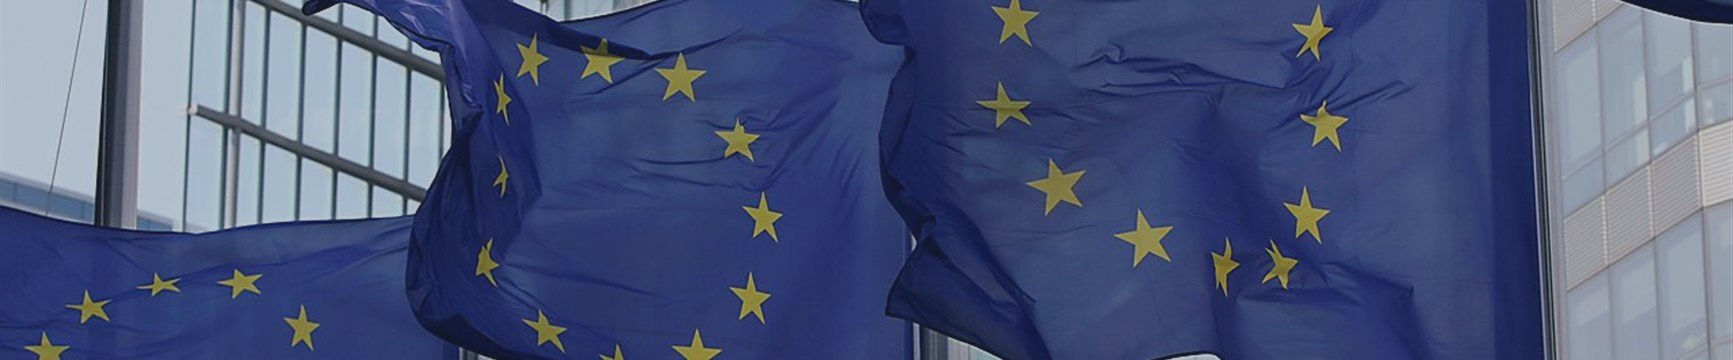 ЕС собрался ответить Трампу пошлиной в 25% на часть импорта из США